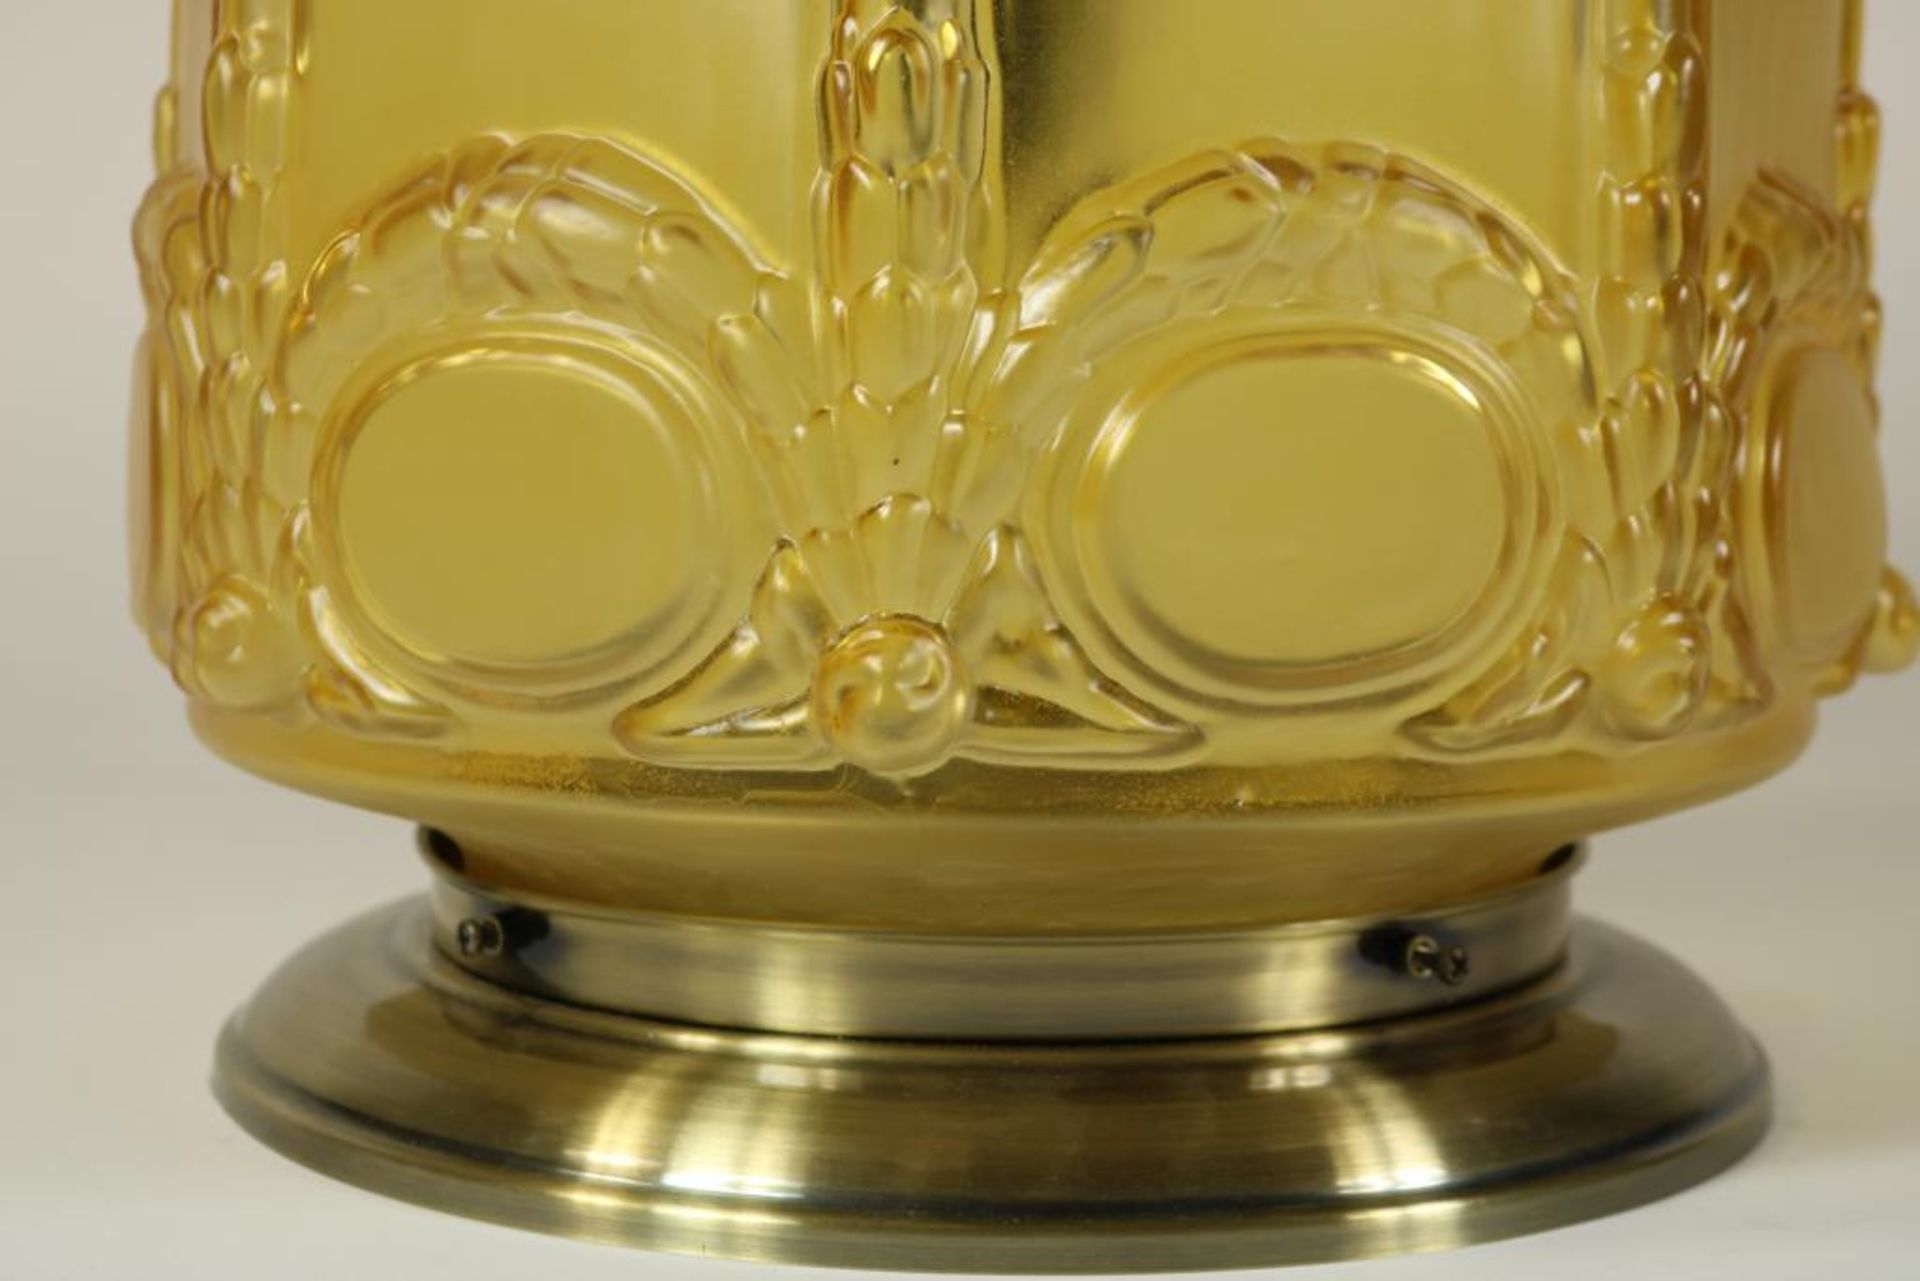 Plafonniere lamp met geel glazen kap met relief van guirlandes, h. 40 cm. - Bild 2 aus 3